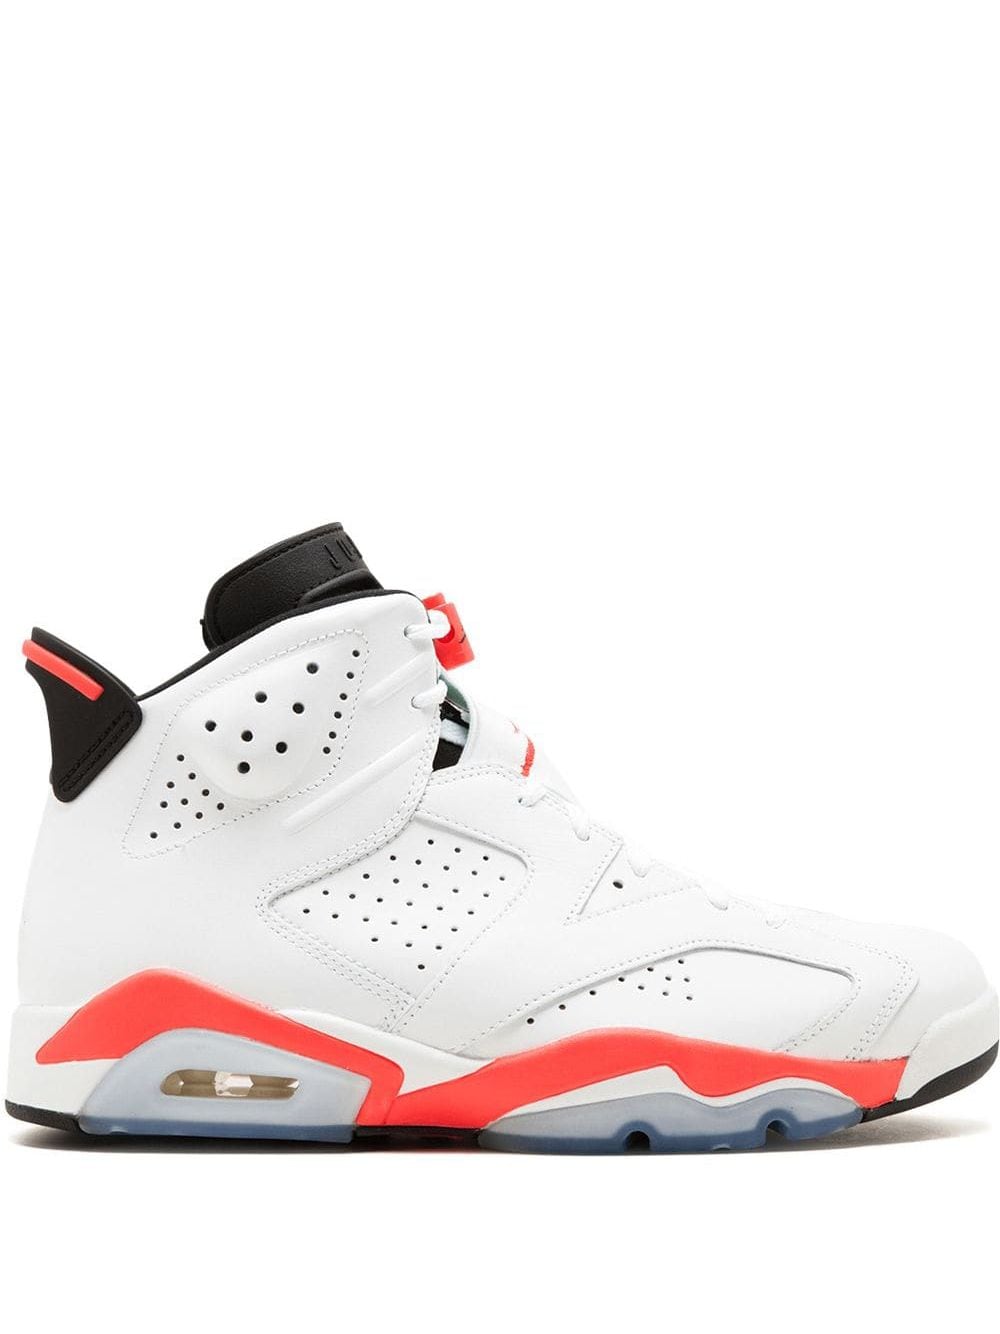 Jordan Air Jordan 6 Retro "White/Infrared 2014" sneakers